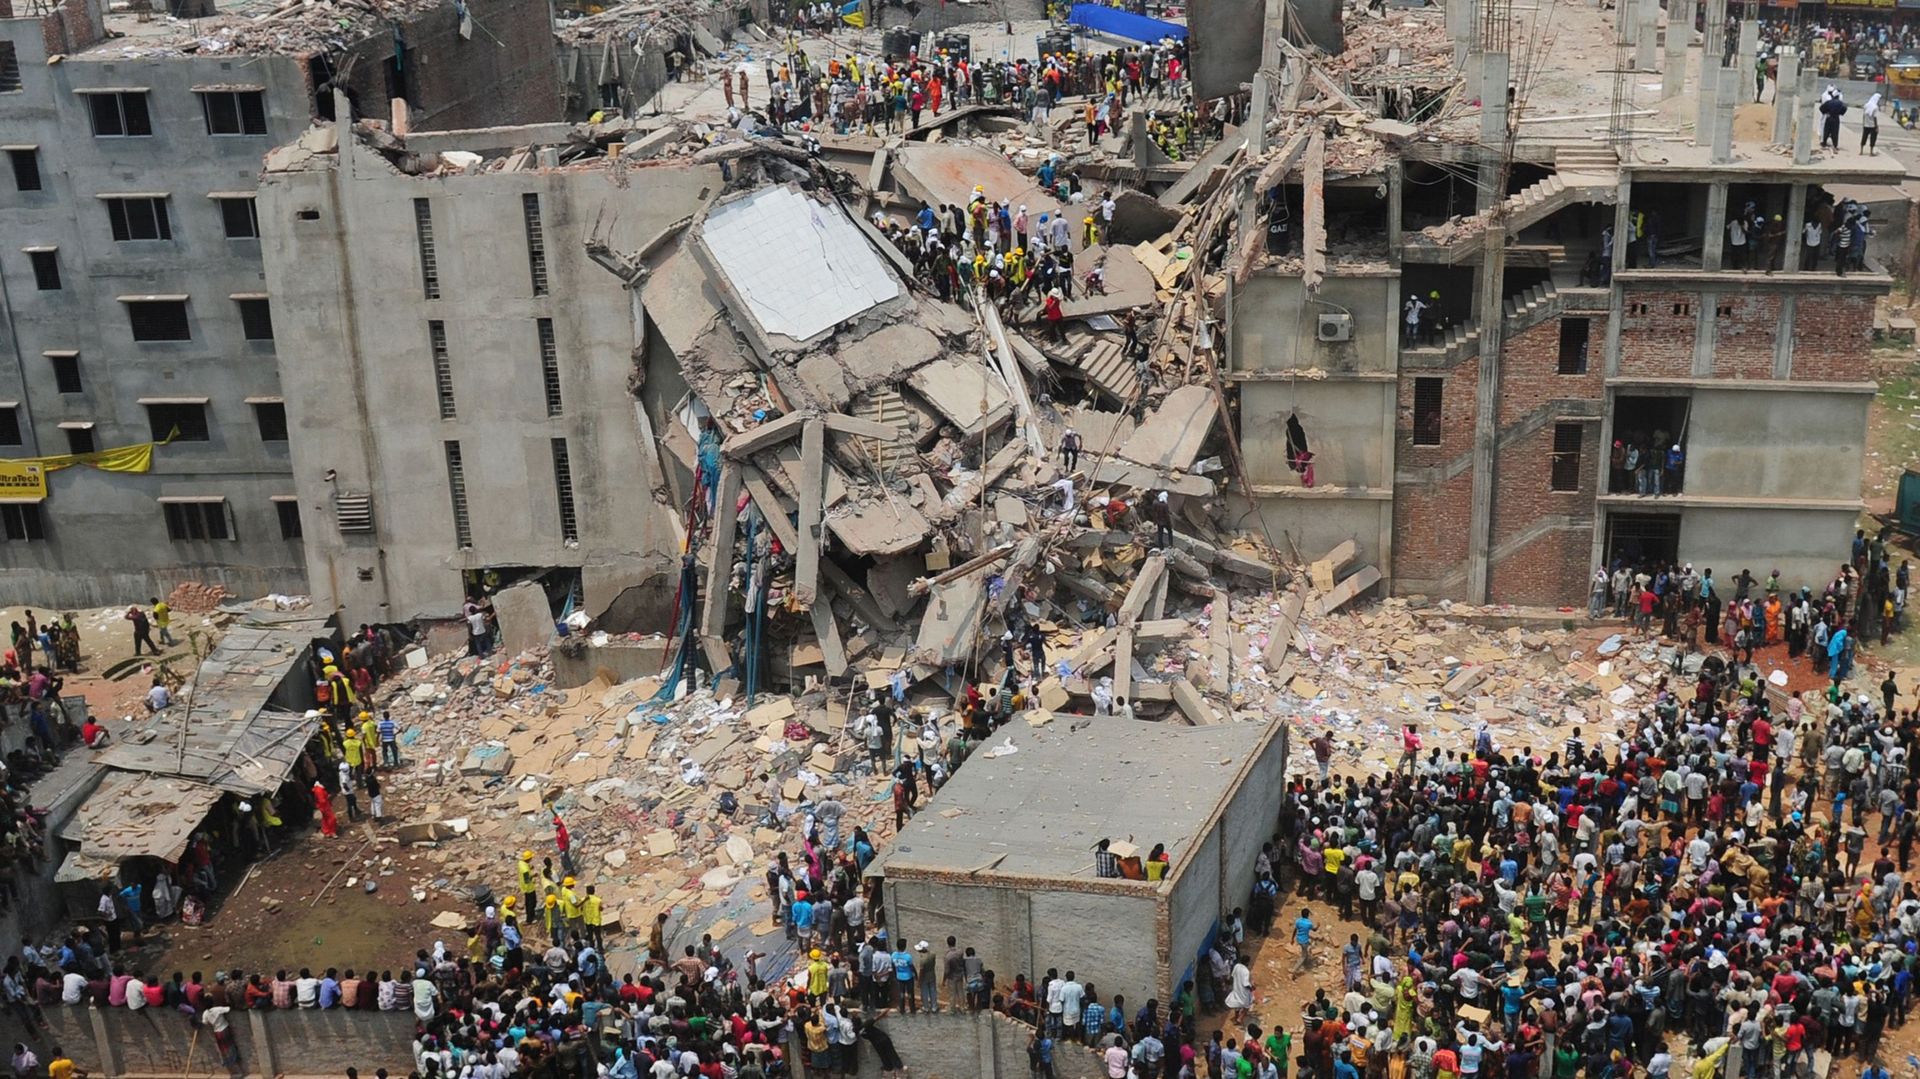 Le gouvernement bangladais promet d'augmenter les salaires des ouvriers du textile, après l'effondrement d'un immeuble qui a coûté la vie à 1126 personnes